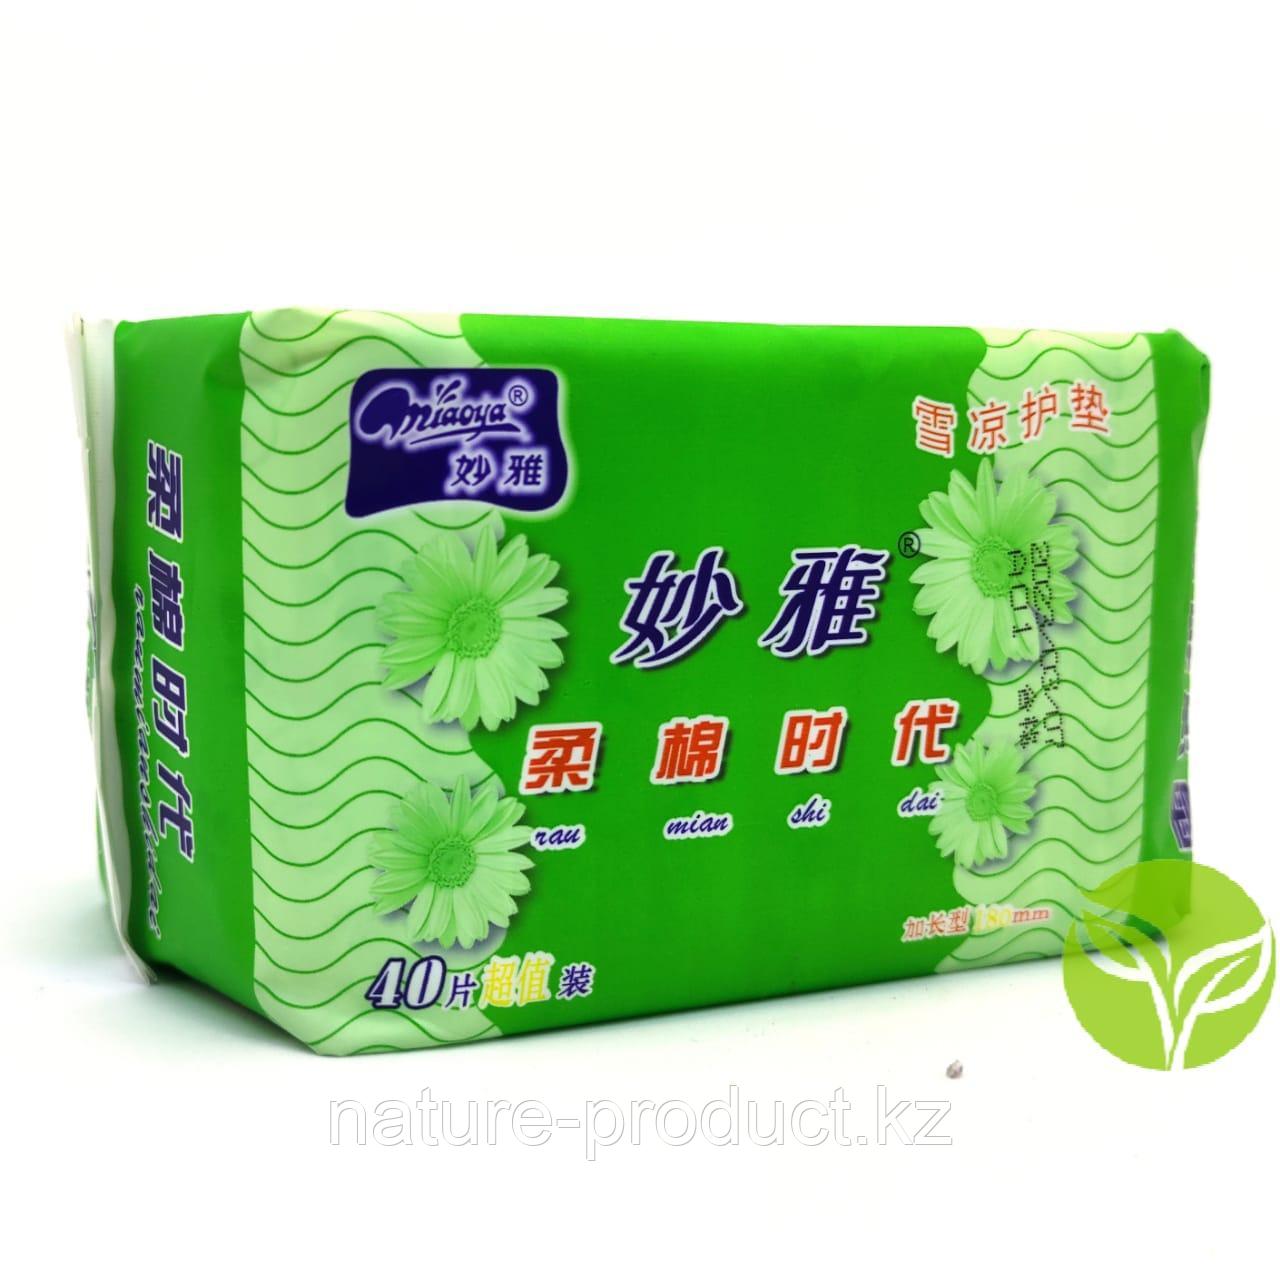 Ежедневки "Miaoya" лечебные противовоспалительные 40 шт. зеленые